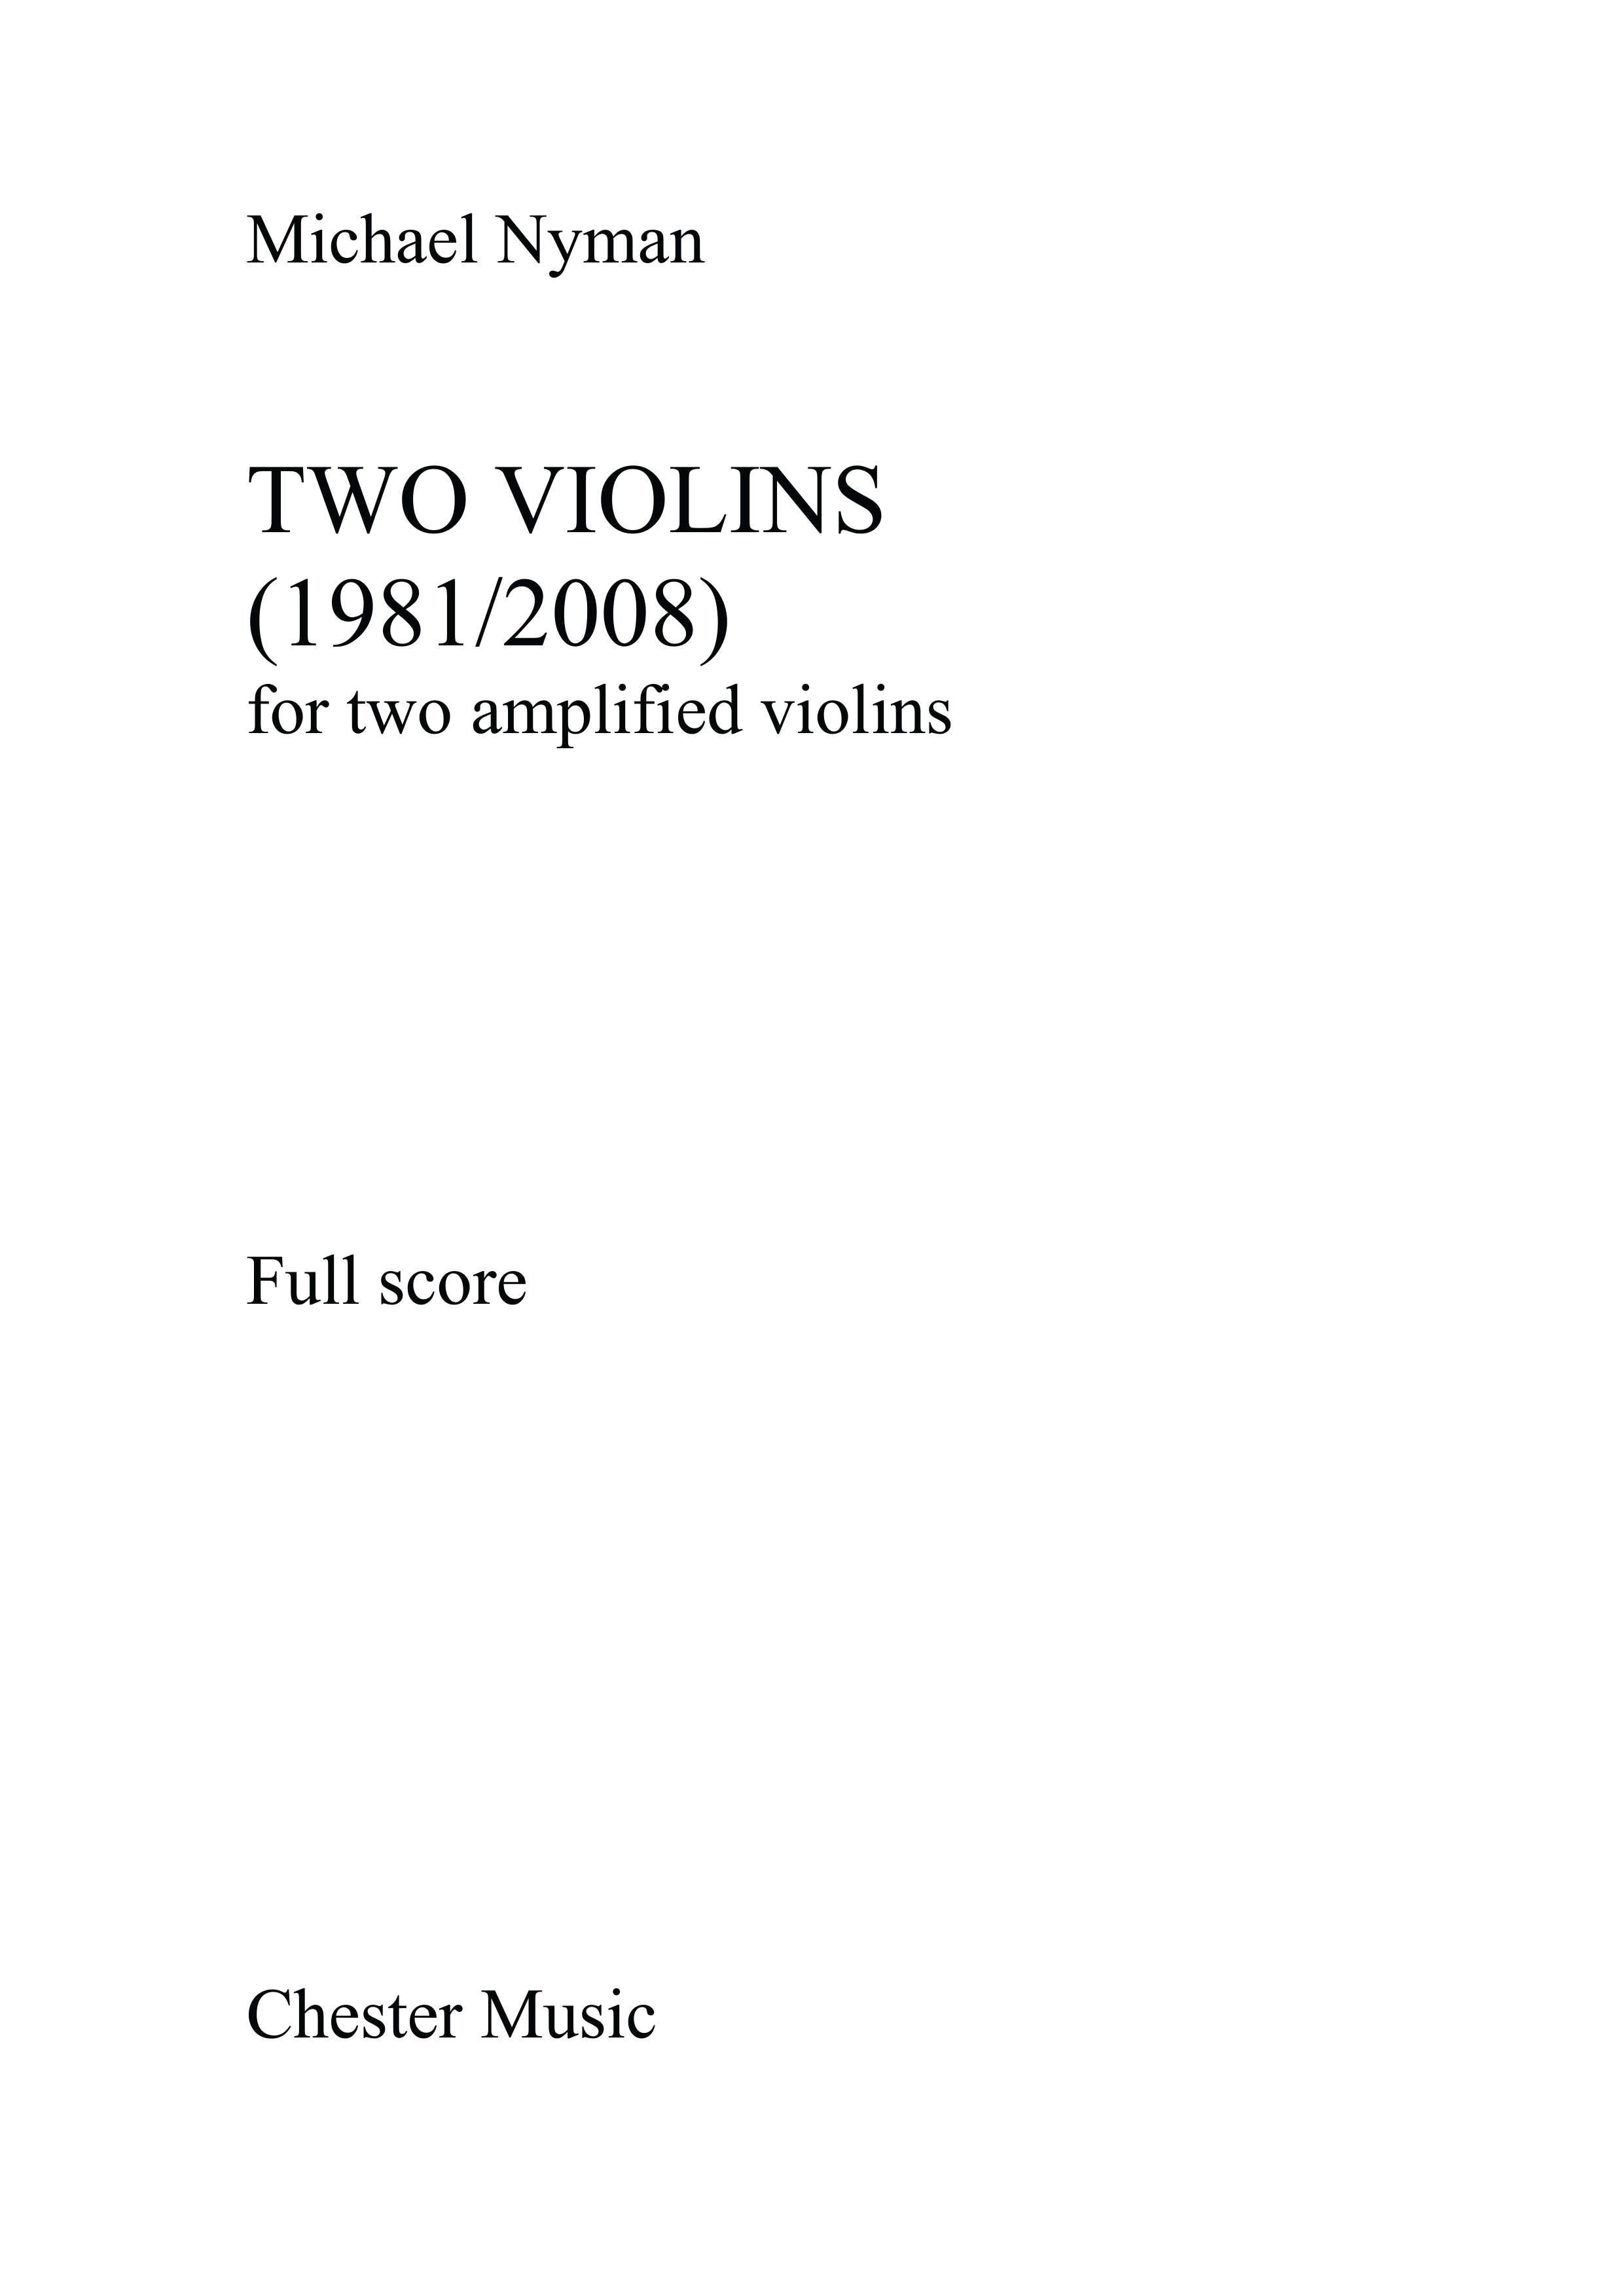 Michael Nyman: Two Violins